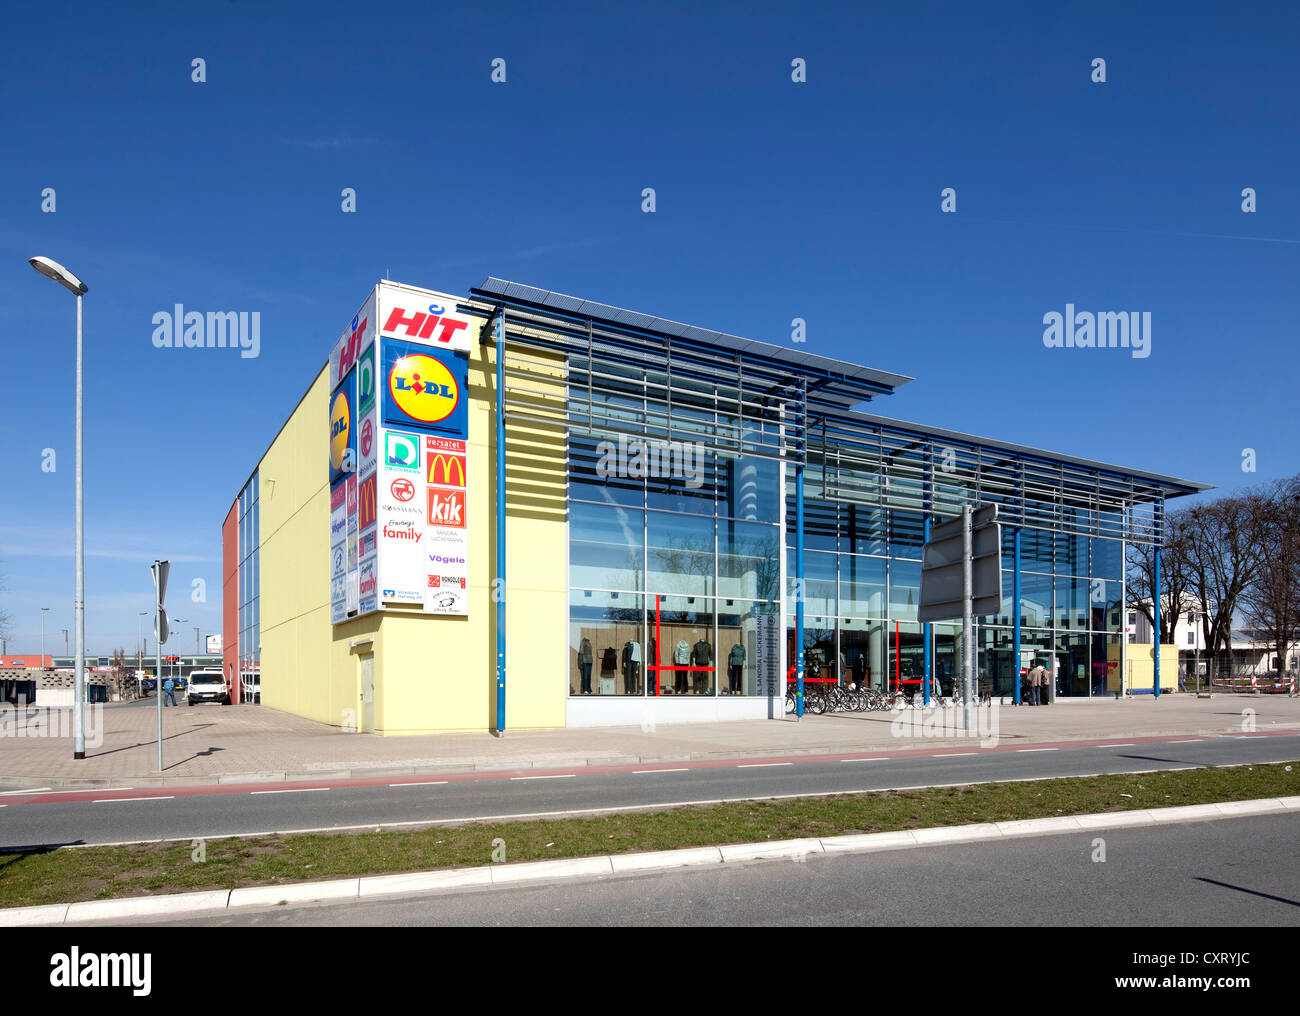 City-Center Einkaufszentrum, Soest, Nordrhein-Westfalen, Deutschland, Europa, PublicGround Stockfoto